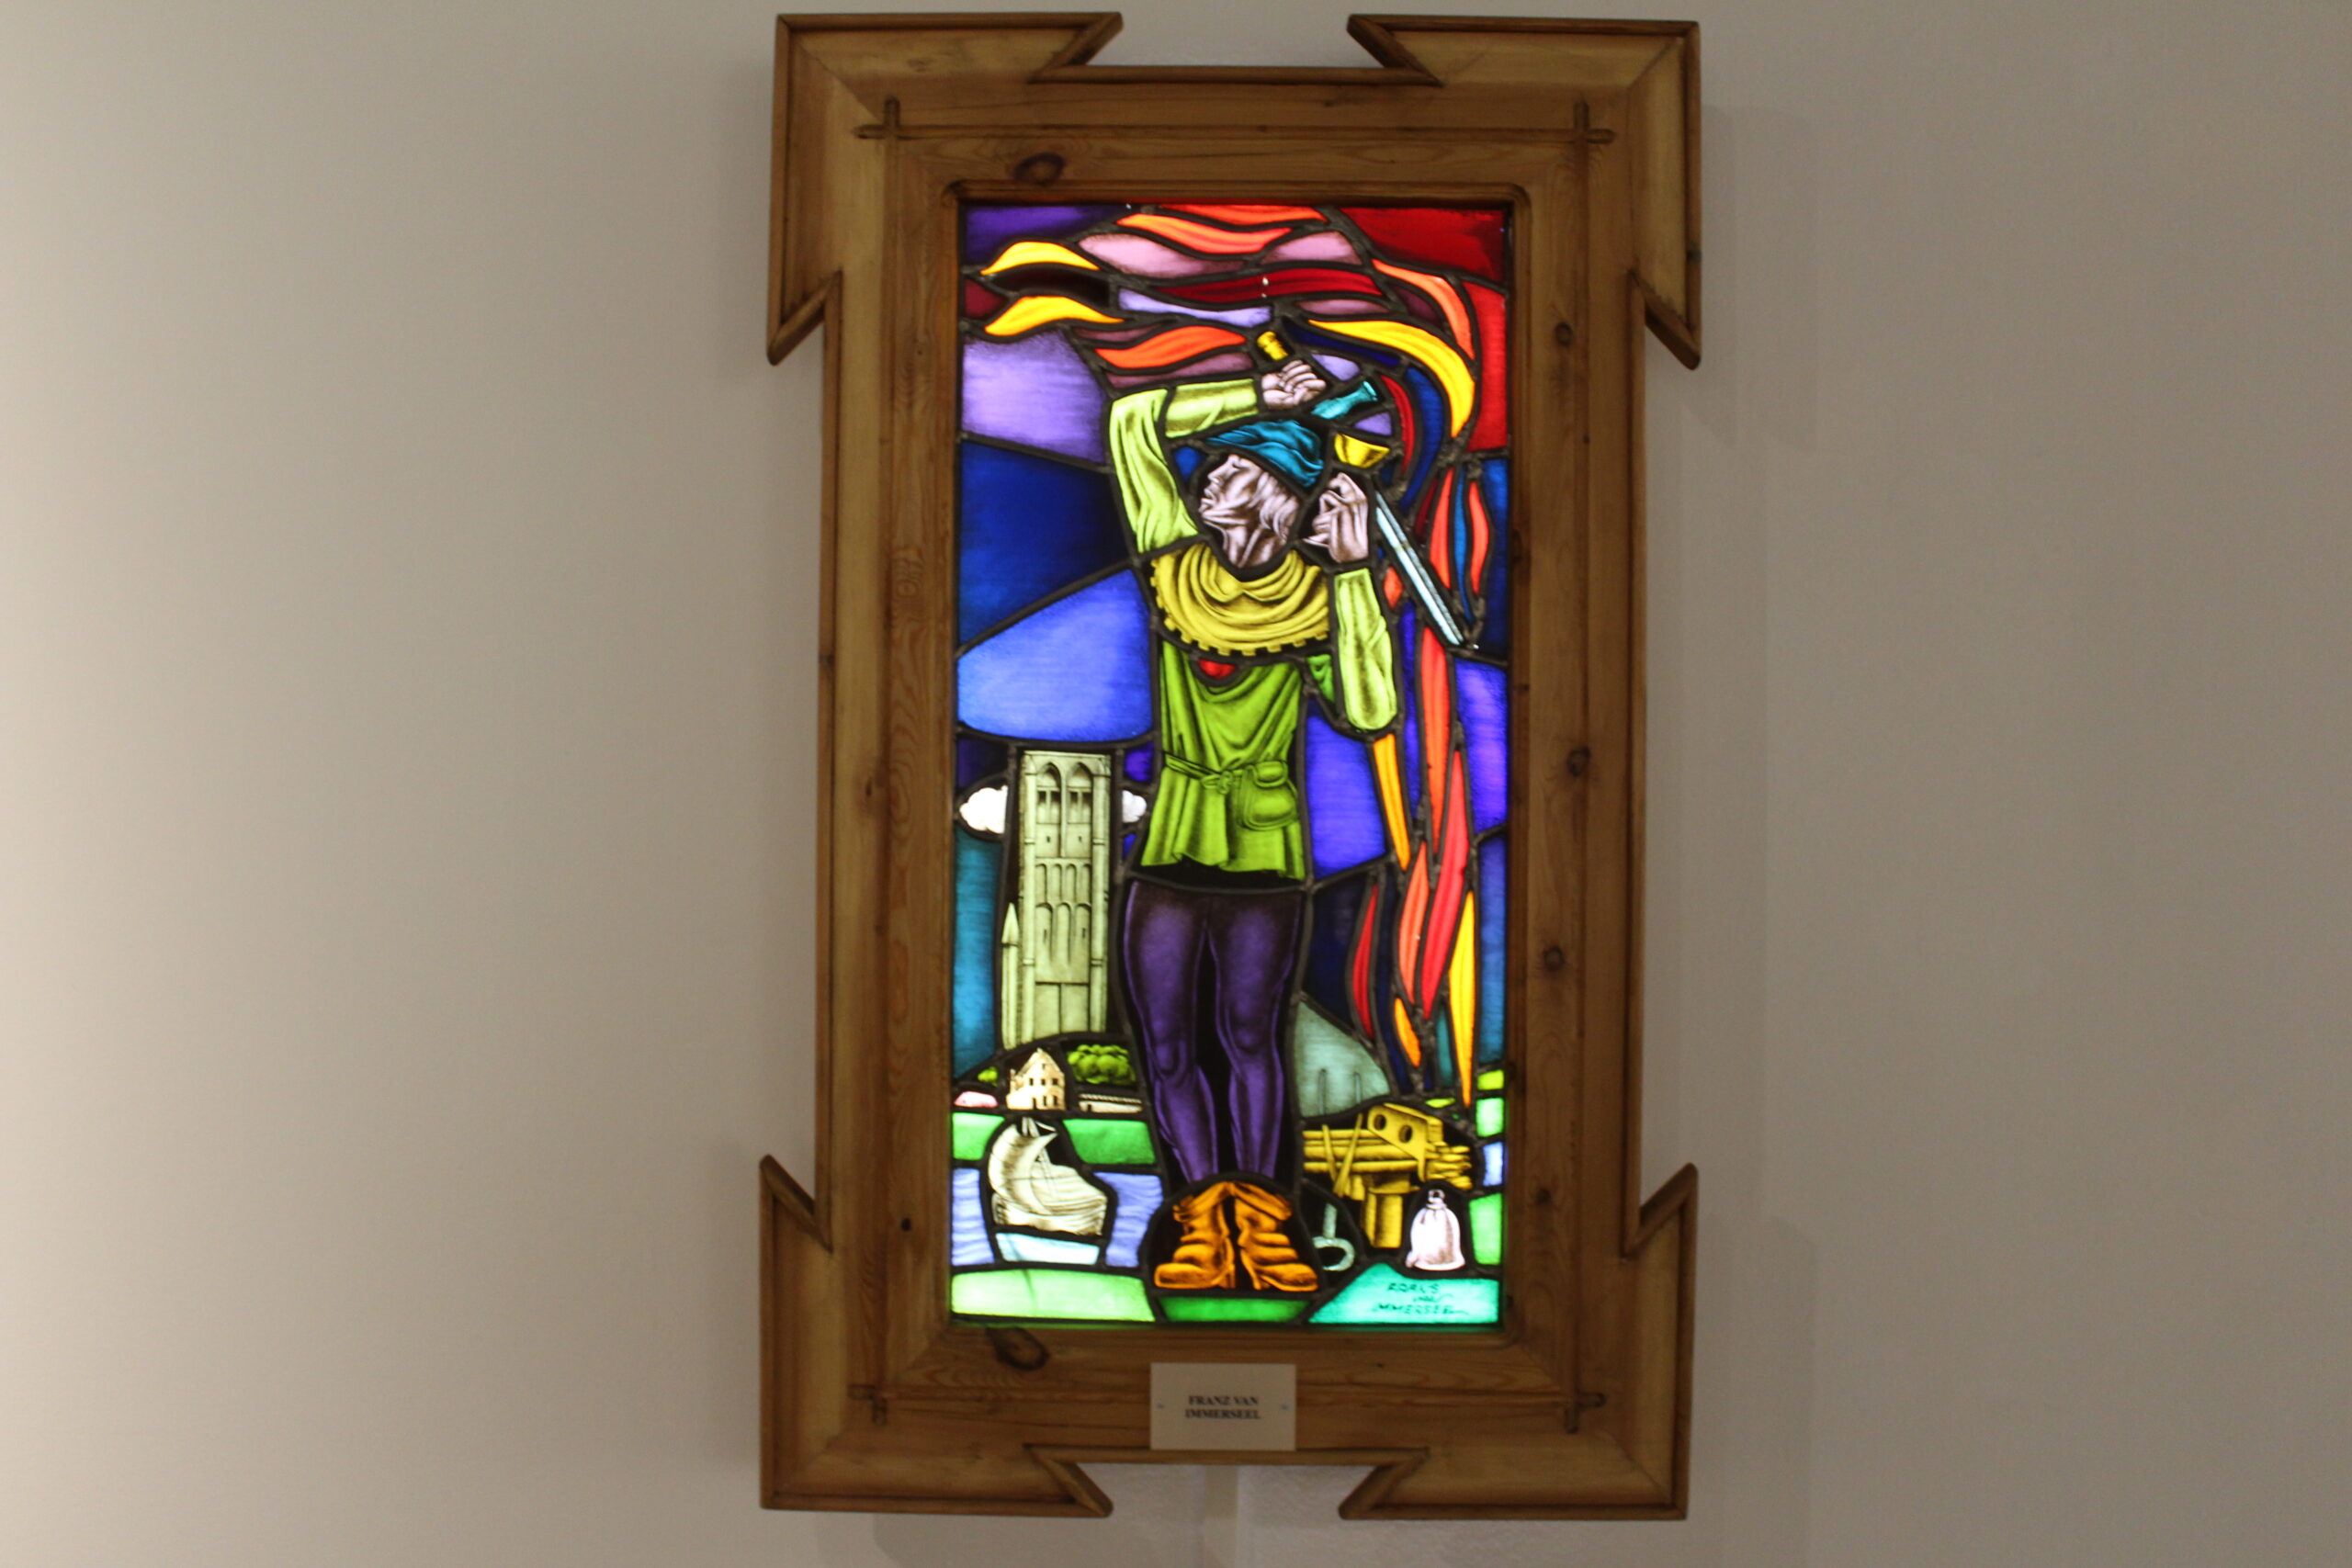 Año internacional del Vidrio y el Museo de Nerja presenta El vidrio en el arte de lo cotidiano